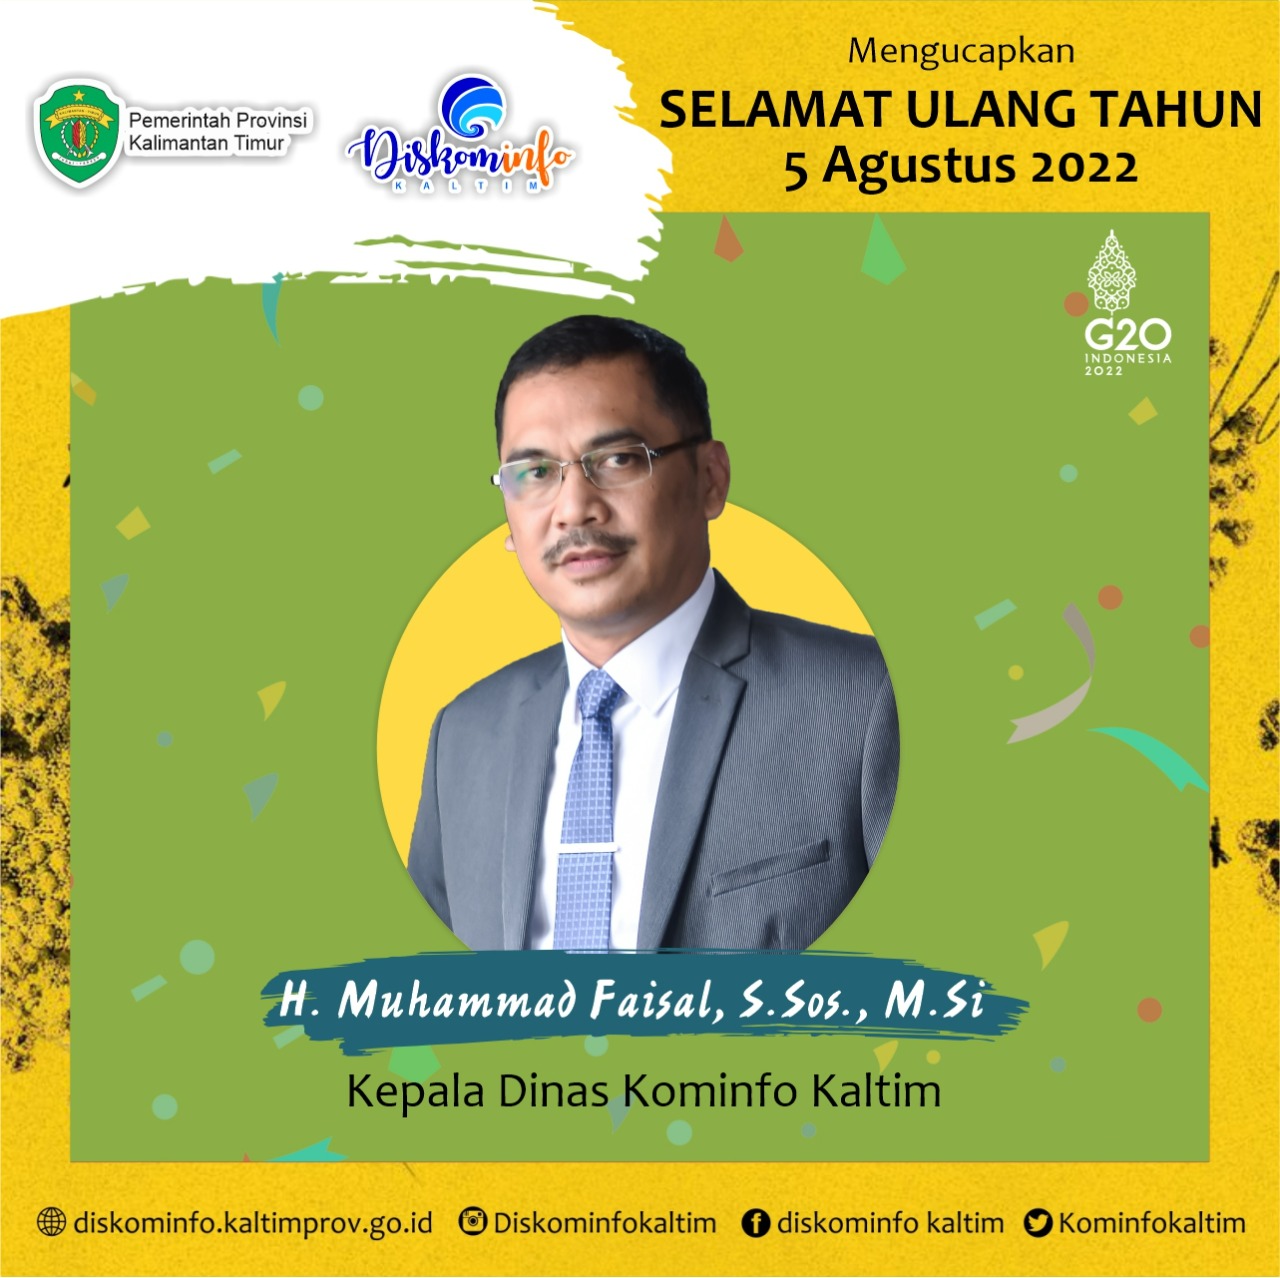 Selamat Ulang Tahun H. Muhammad Faisal, S.Sos., M.Si (Kepala Dinas Komunikasi dan Informatika Provinsi Kalimantan Timur)